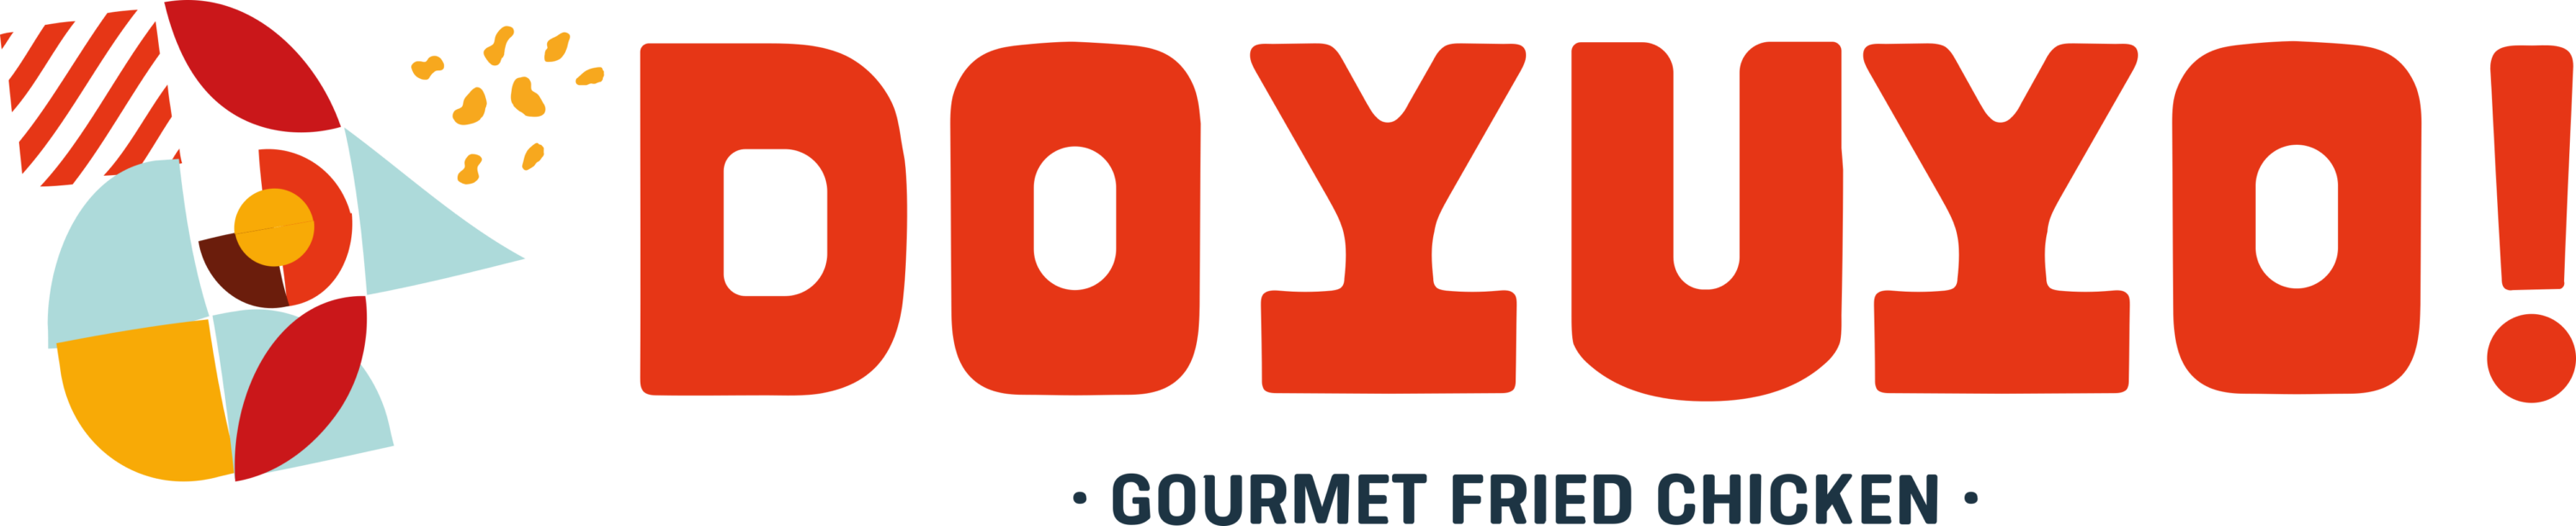 Doyuyo Fried Chicken Logo